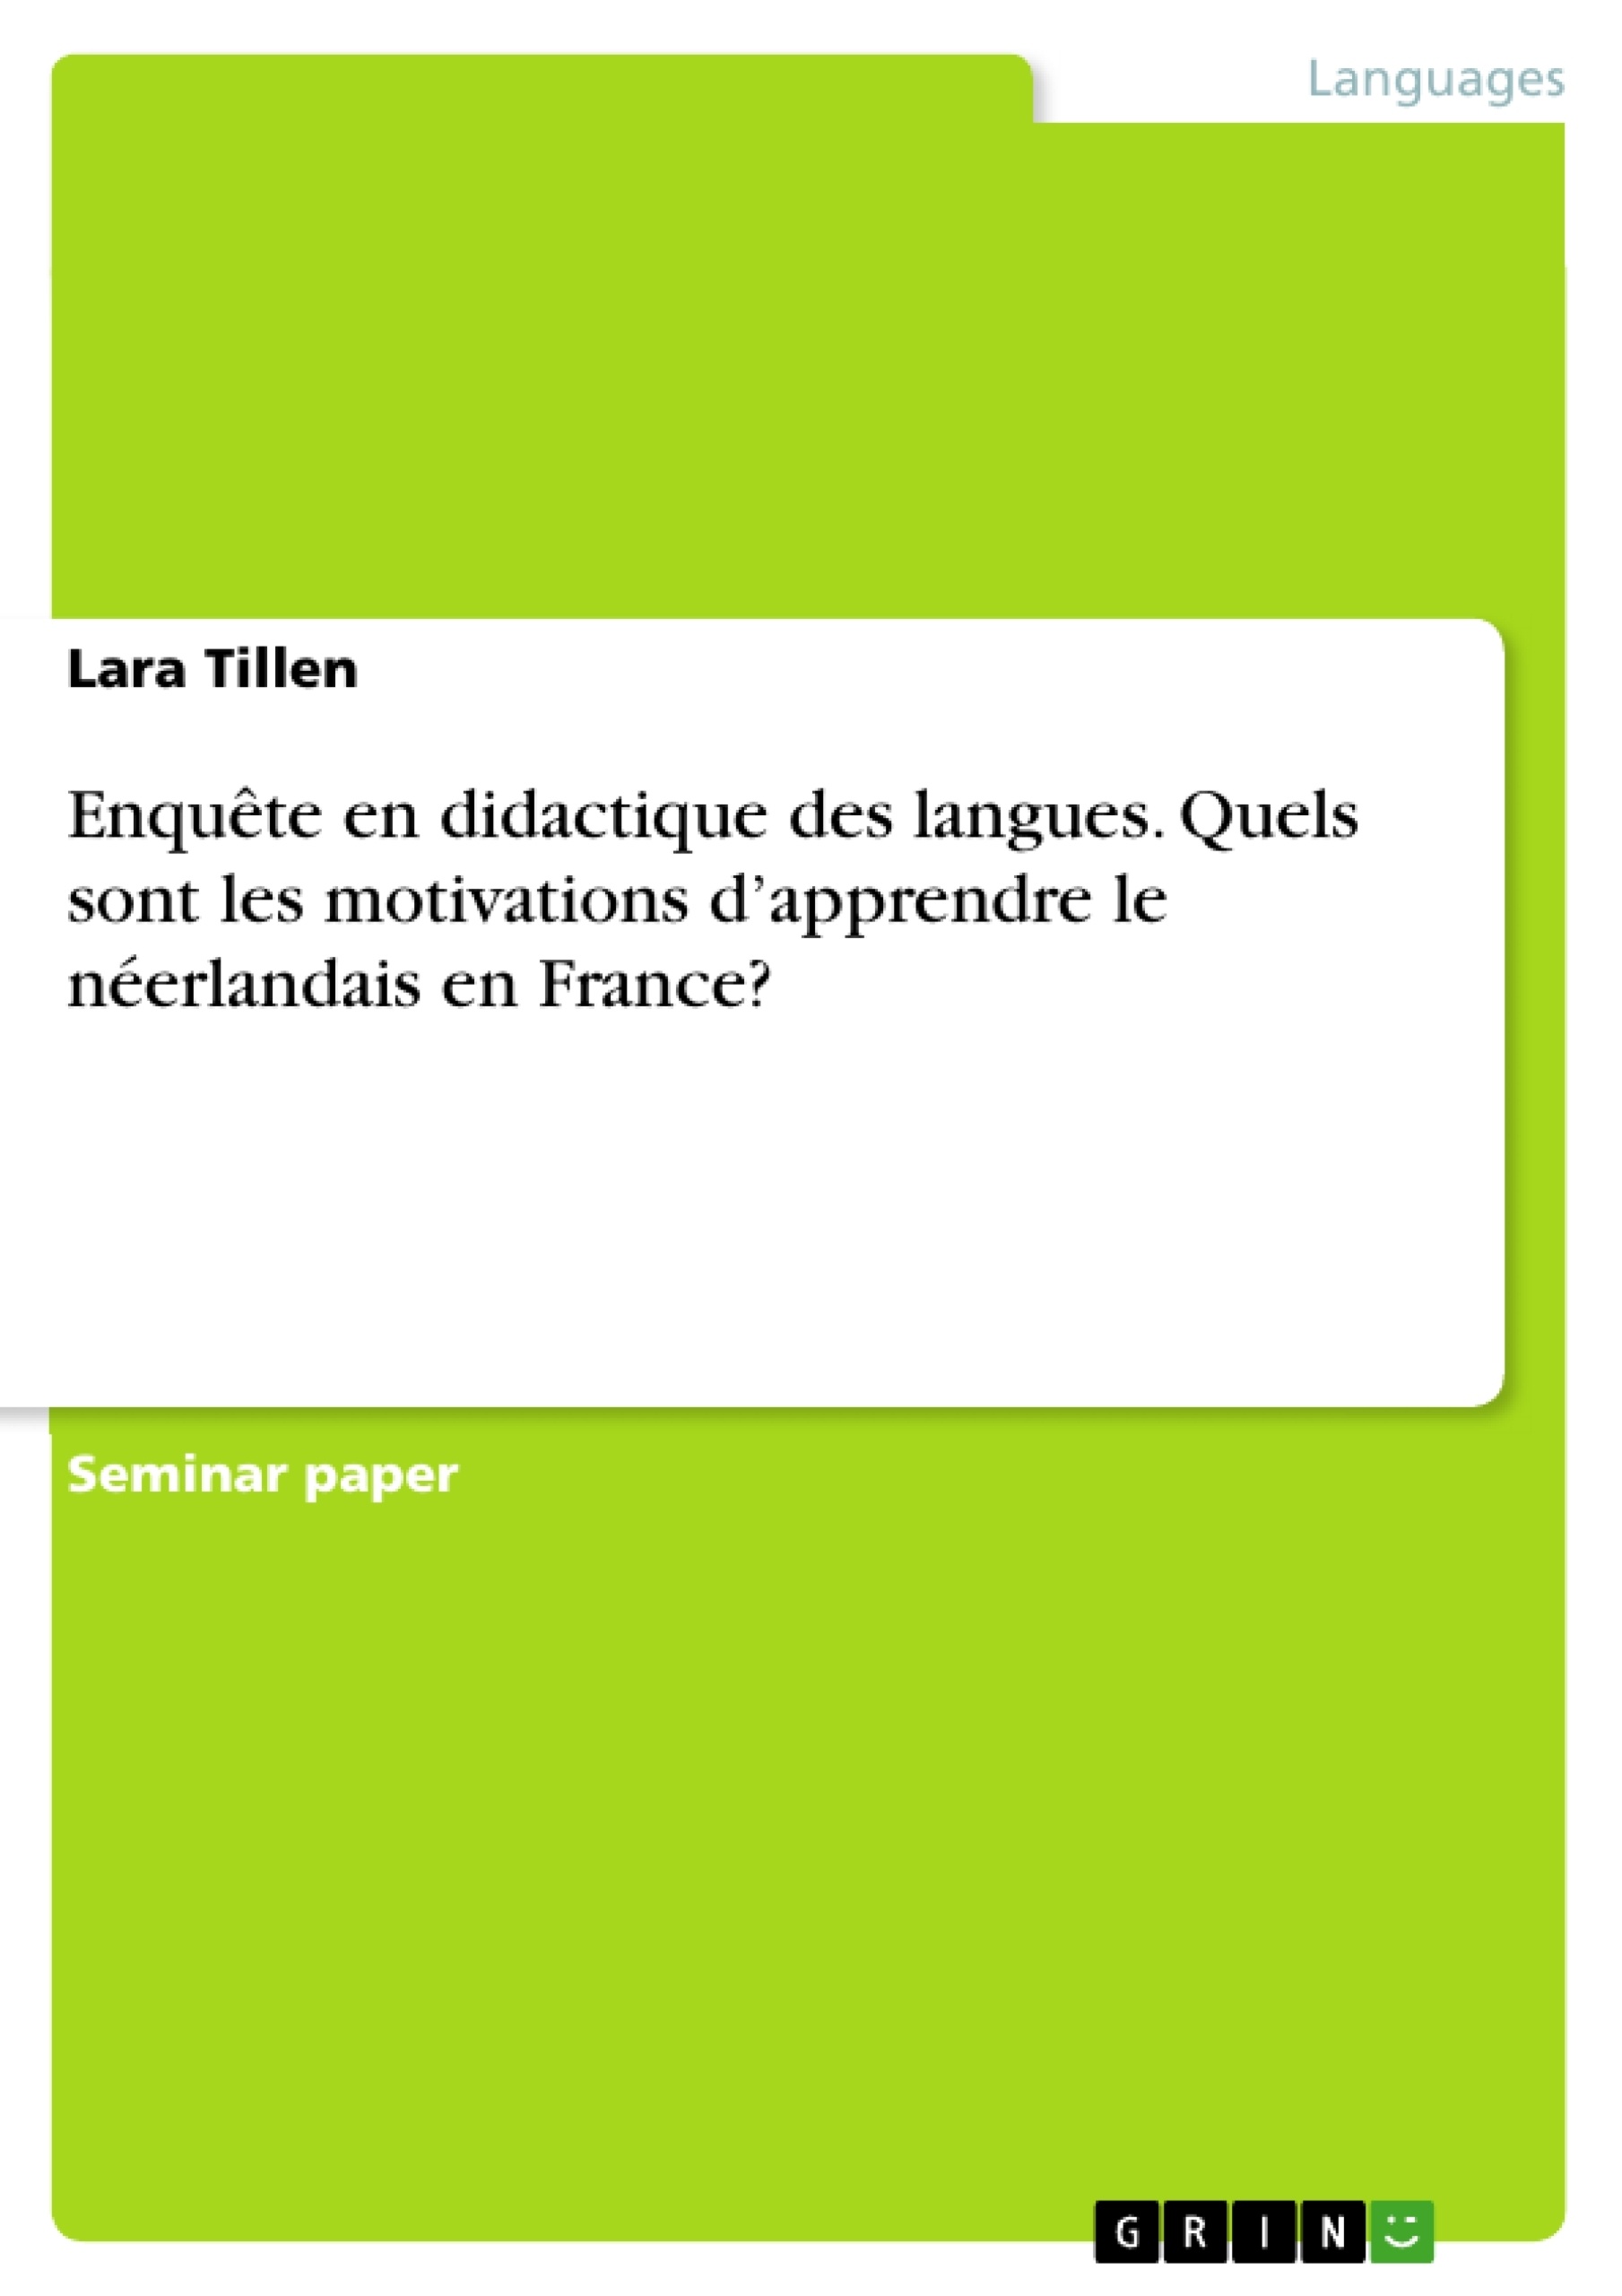 Titre: Enquête en didactique des langues. Quels sont les motivations d’apprendre le néerlandais en France?